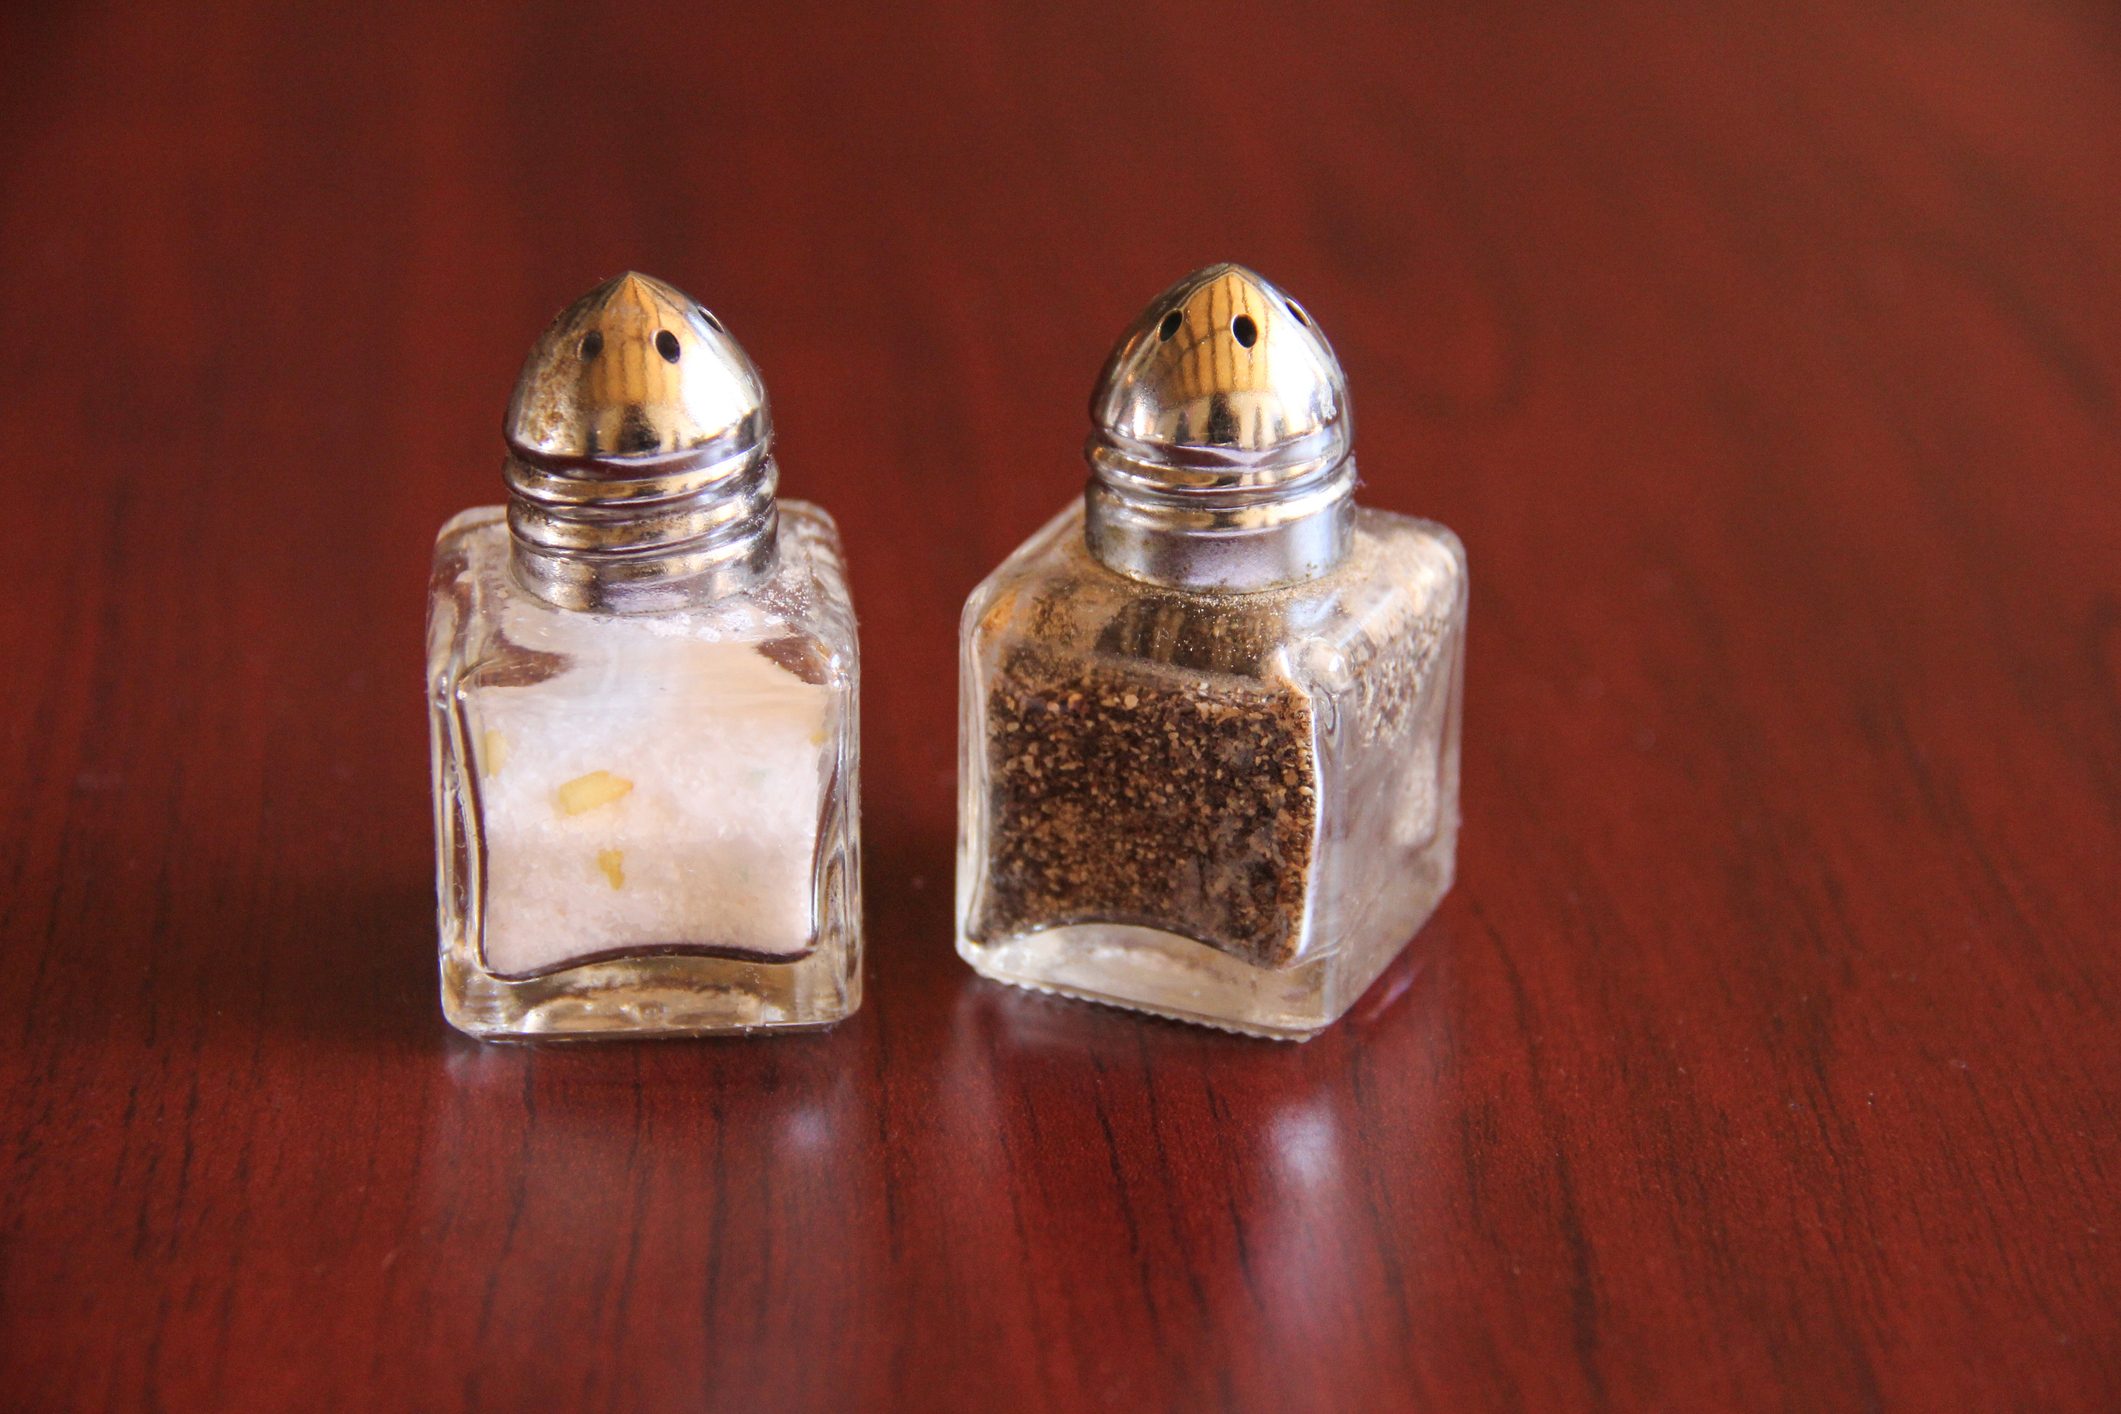 Salt and pepper shaker on table